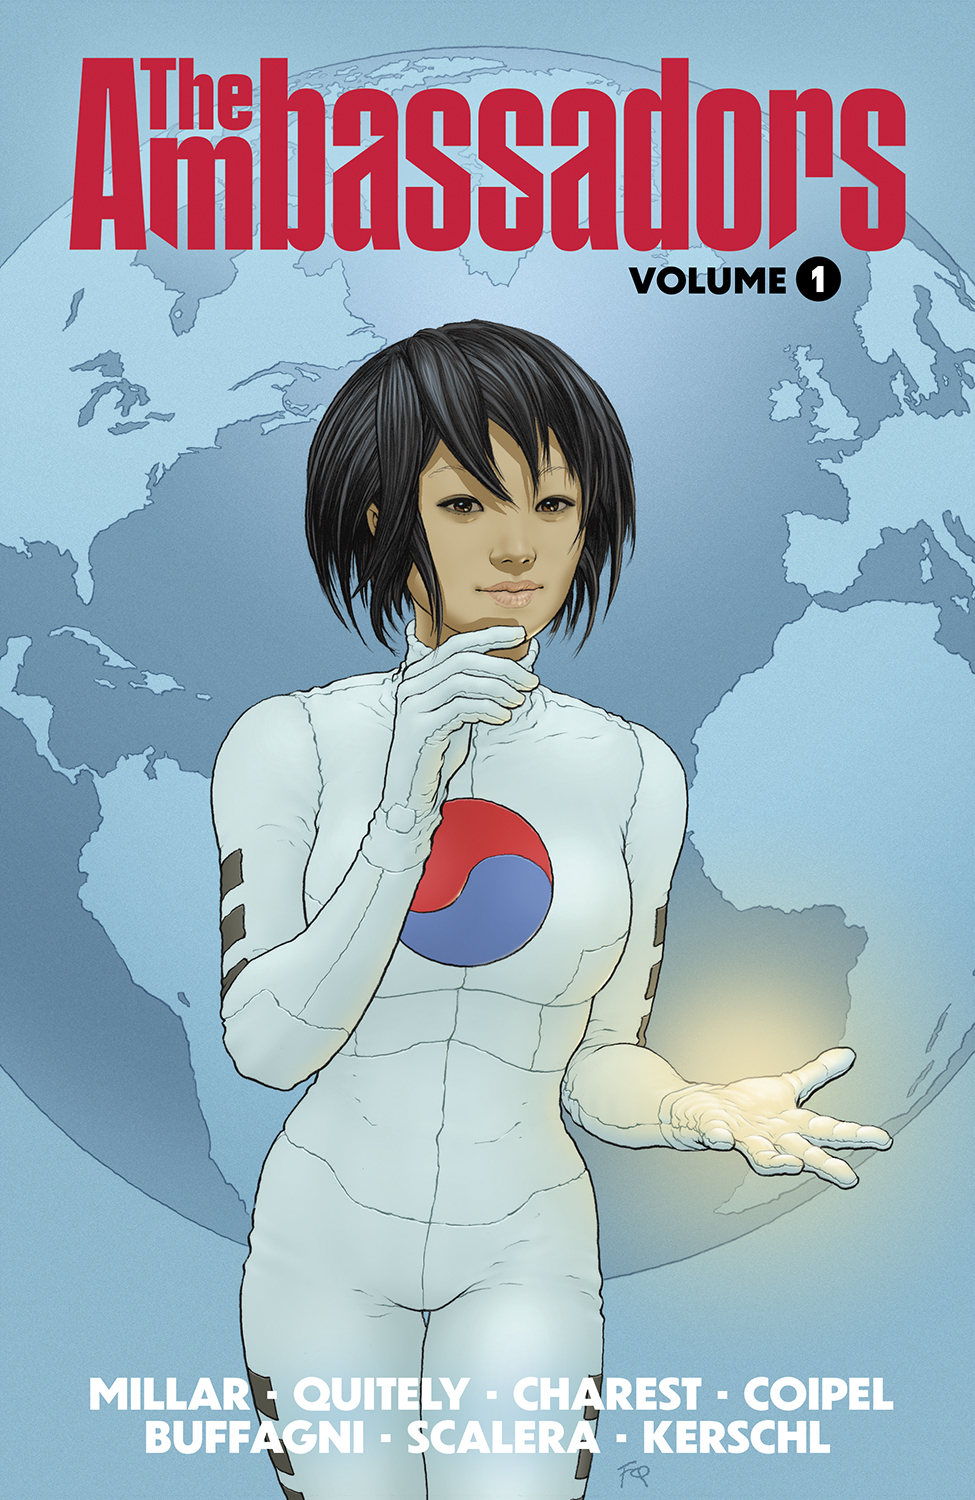 Ambassadors Graphic Novel Volume 1